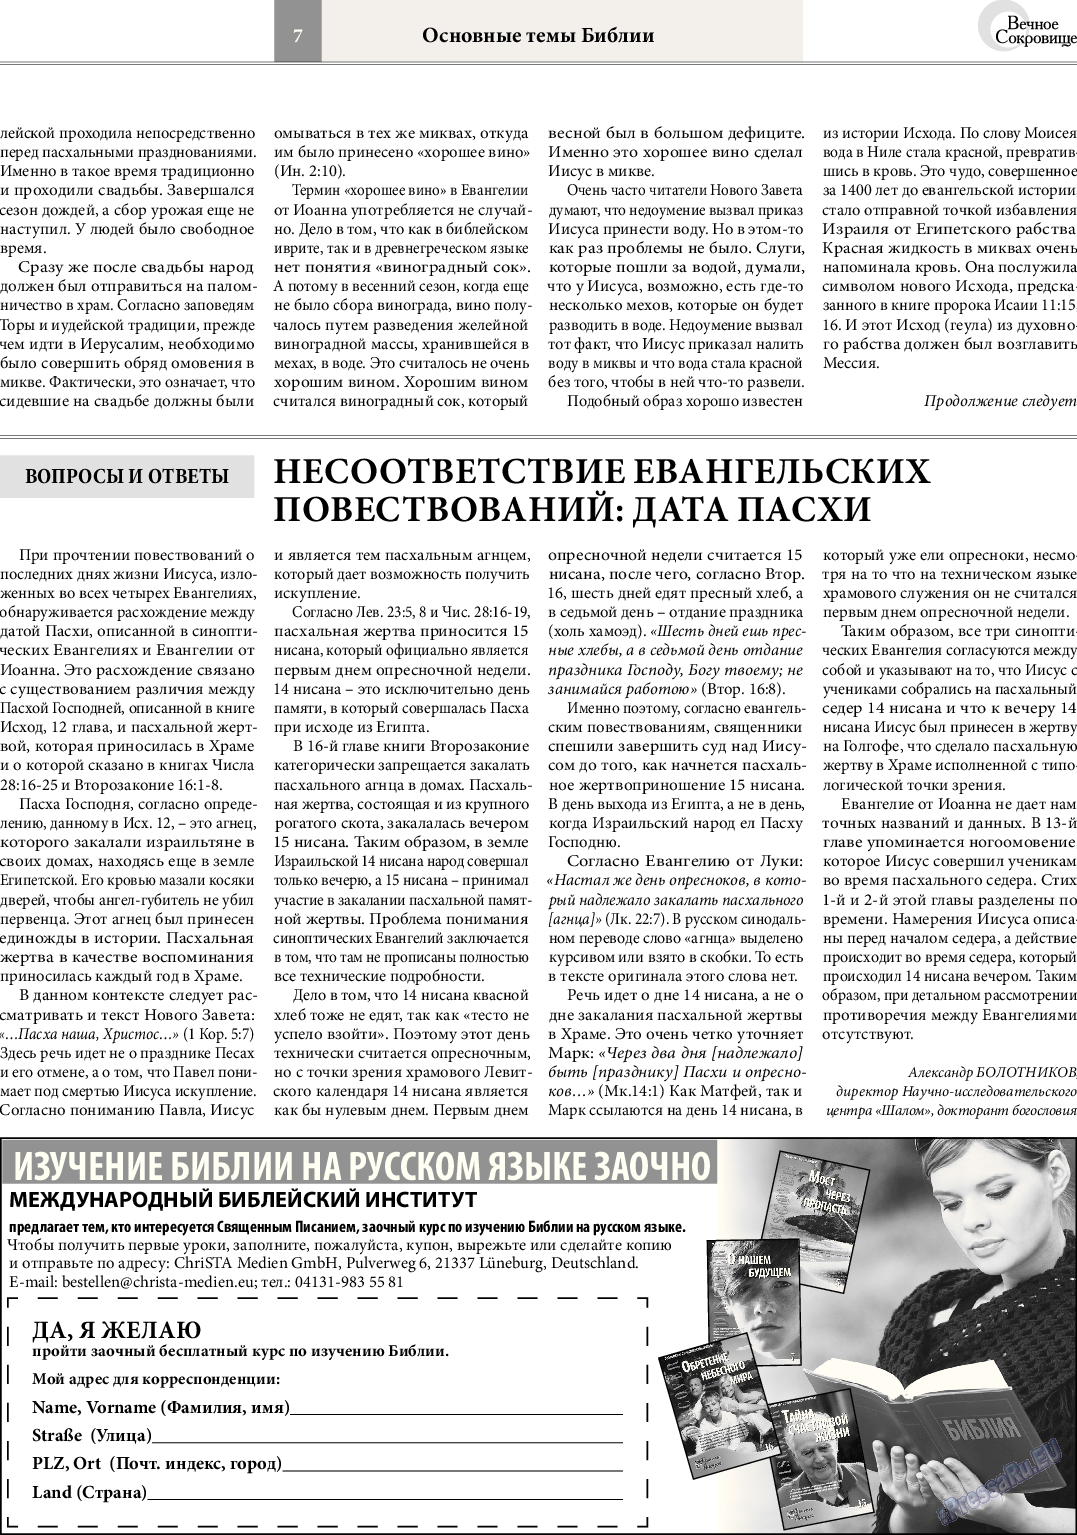 Вечное сокровище, газета. 2014 №2 стр.7